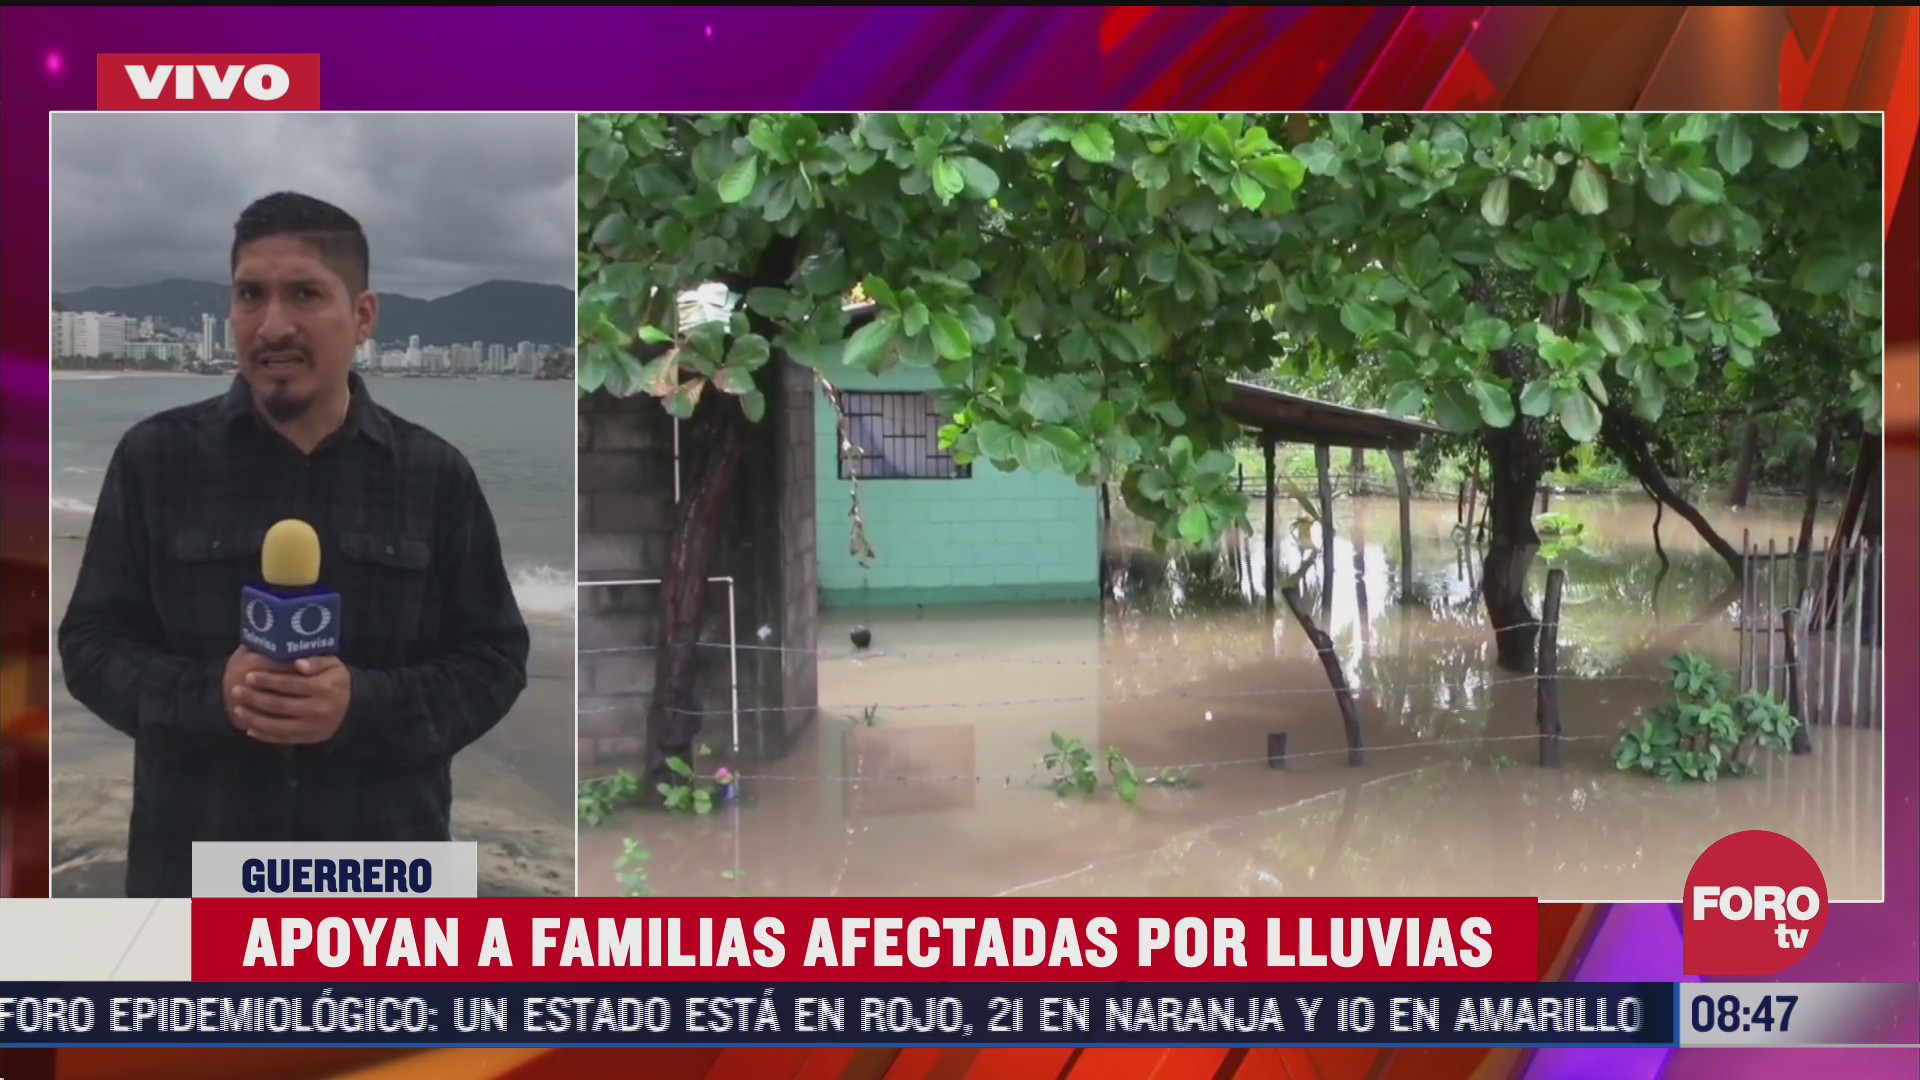 fuertes lluvias en guerrero afecto los hogares de decenas de familias